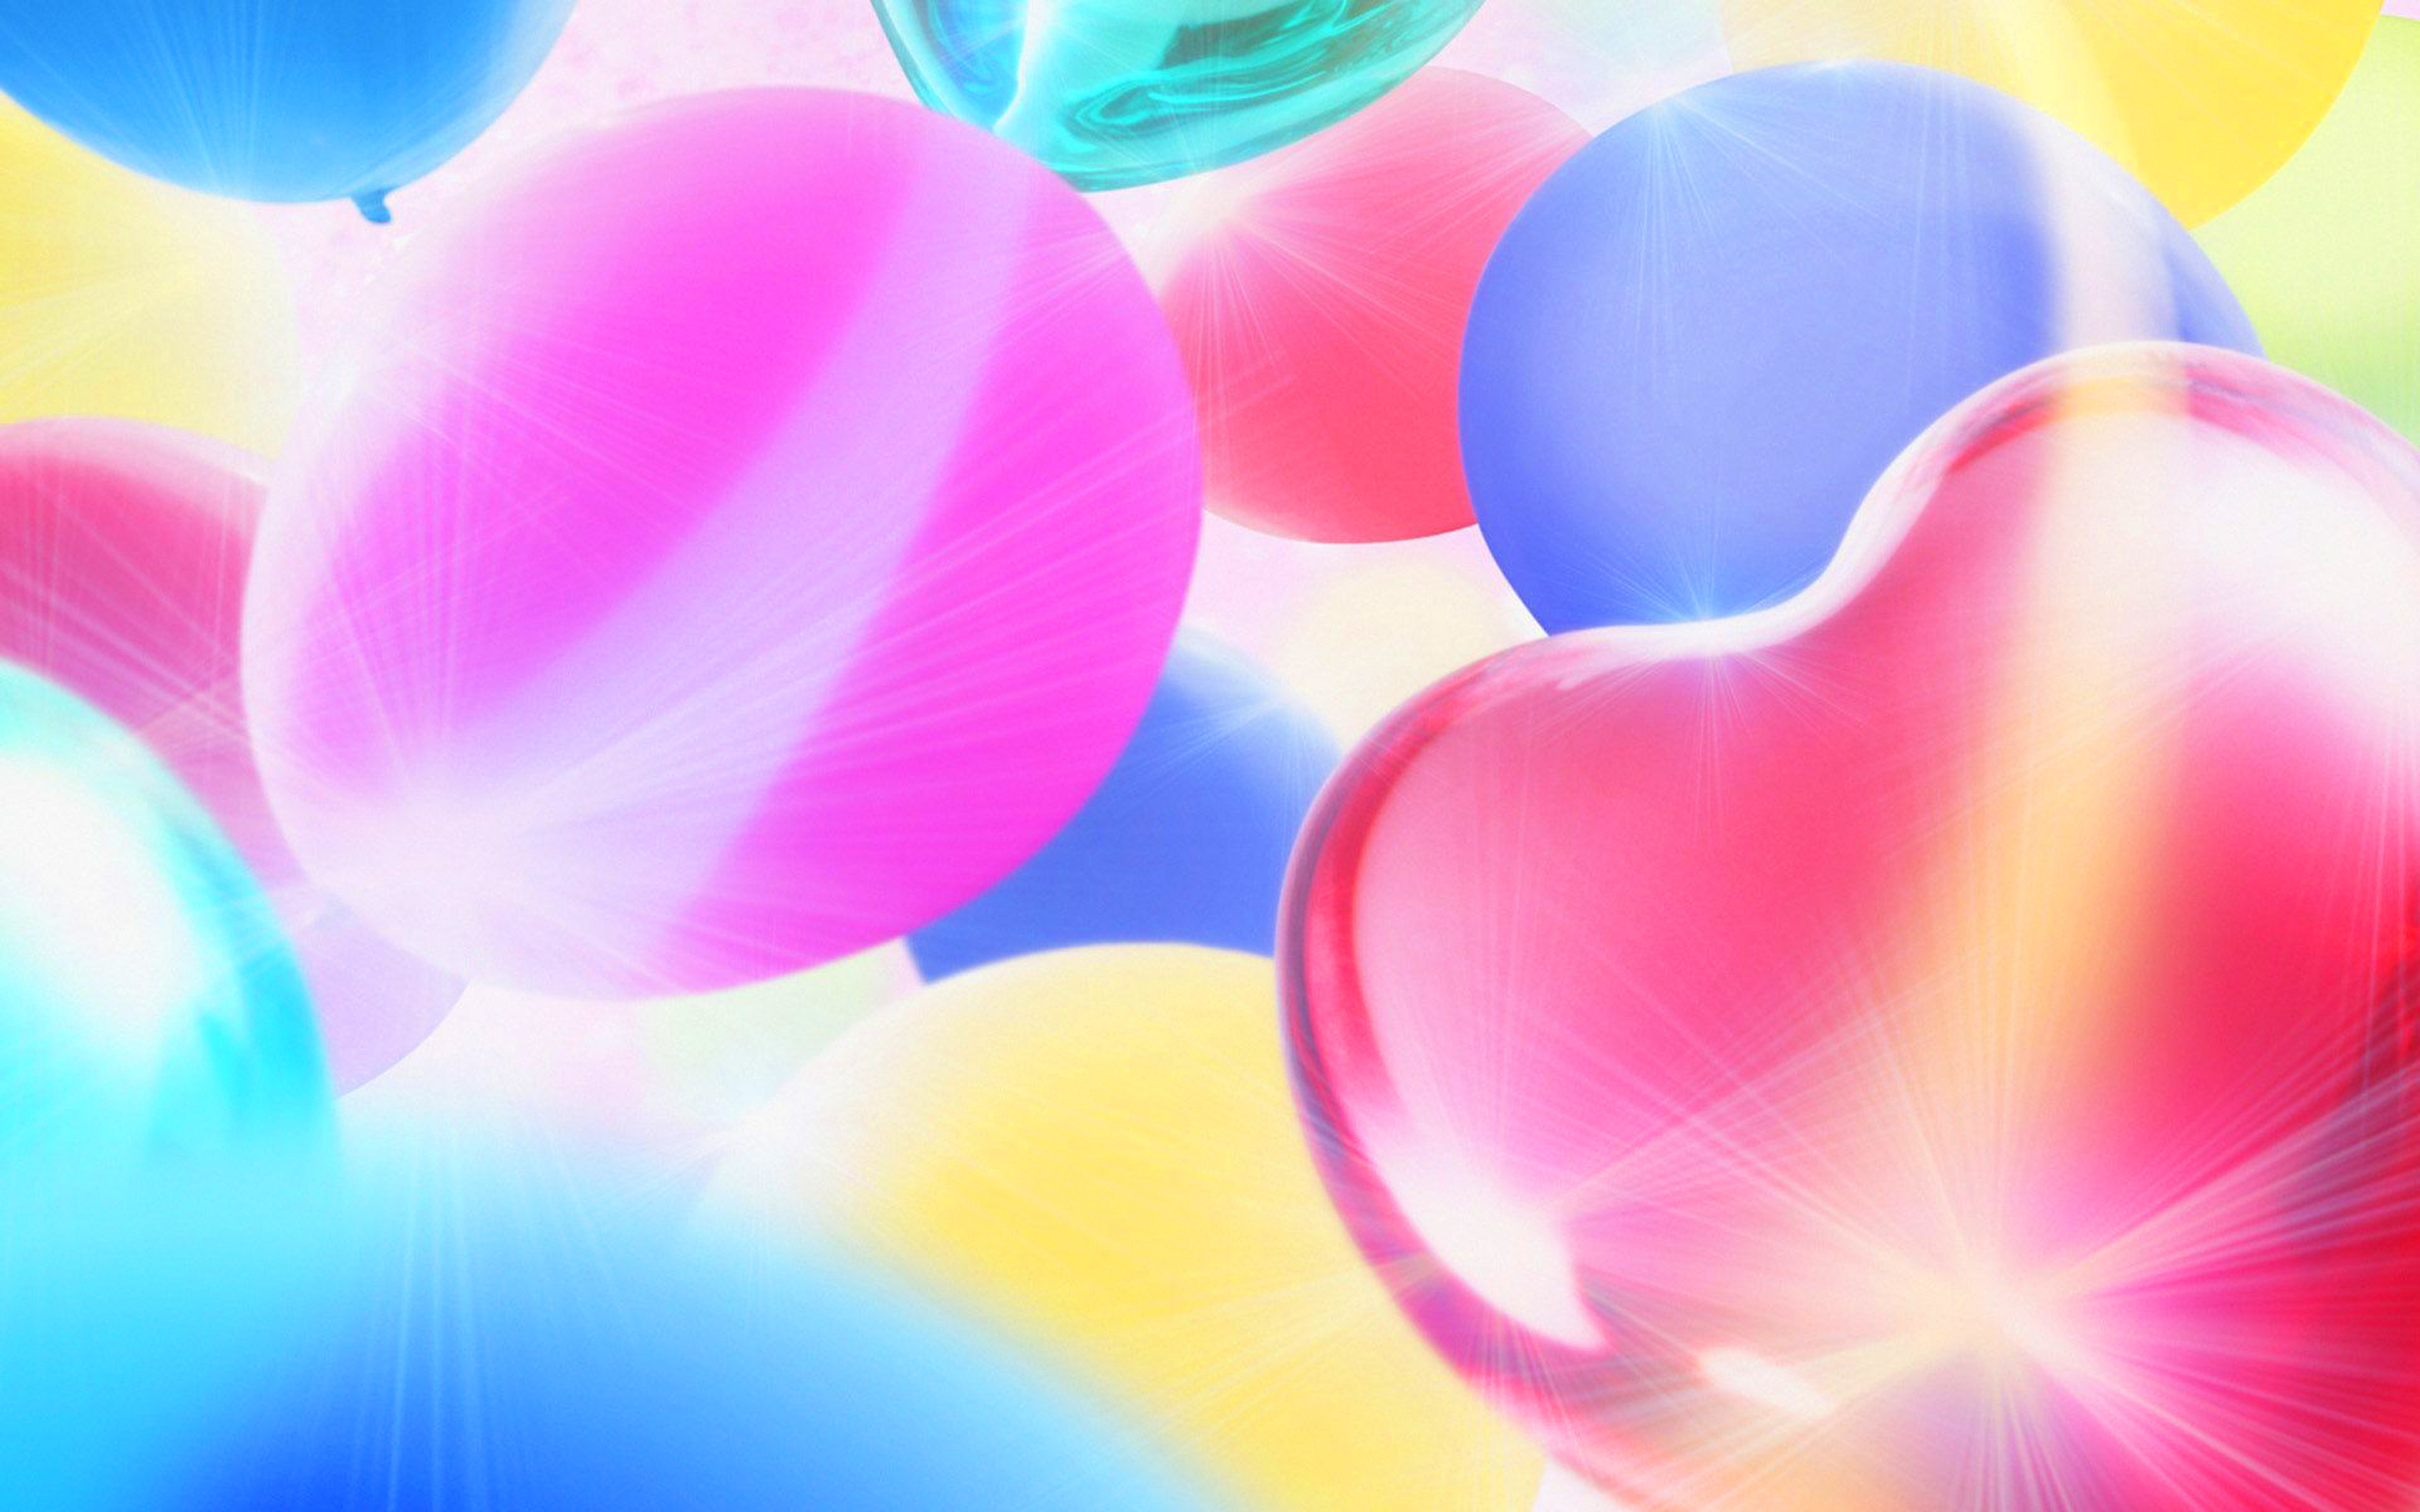 Rose Heart With Ballons Puter Desktop Wallpaper